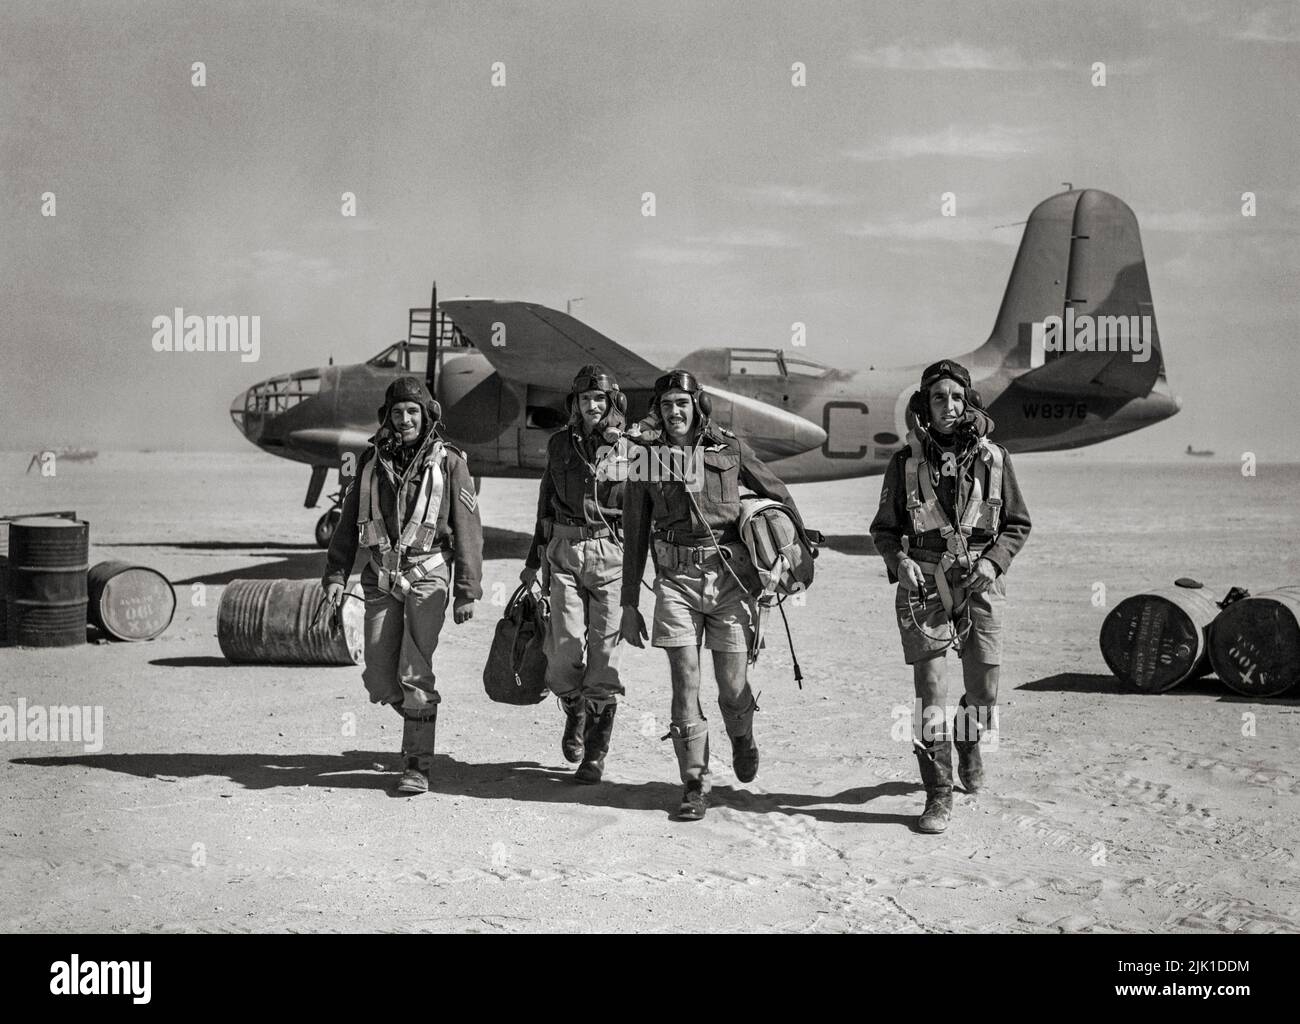 Die Besatzung von Douglas Boston Mark III von No 24 Squadron, South African Air Force, die nach einem Sortie von ihrem Flugzeug auf einem Flugplatz in Libyen wegging. Die Boston war ein amerikanischer mittlerer Bomber, Angriffsflugzeug, Nachteindringling, Nachtjäger und Aufklärungsflugzeug des Zweiten Weltkriegs Stockfoto